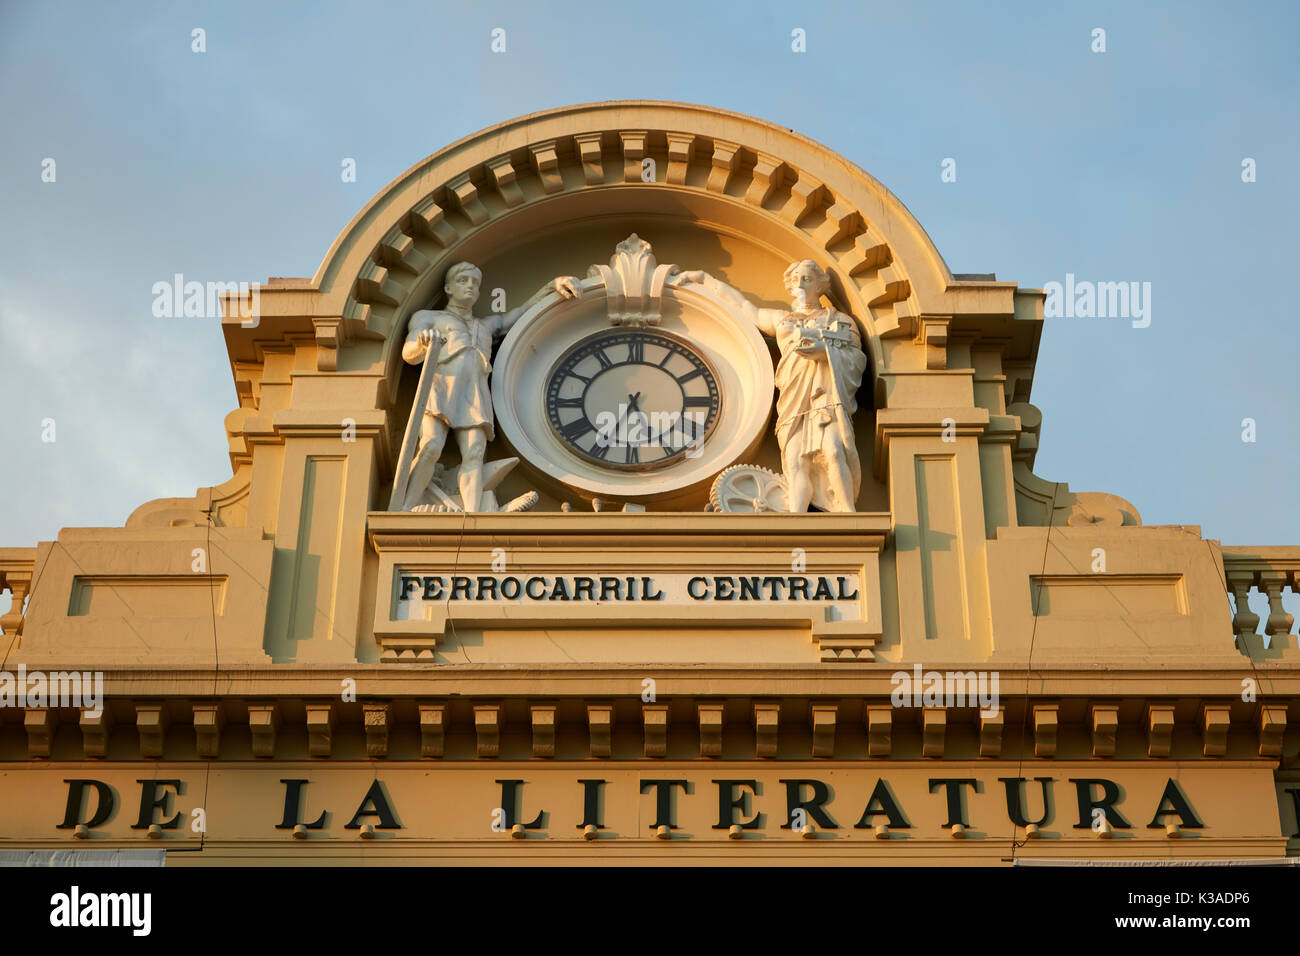 Torre dell'orologio sulla casa della letteratura peruviana (ex stazione ferroviaria), il centro storico di Lima (sito Patrimonio Mondiale), Perù, Sud America Foto Stock